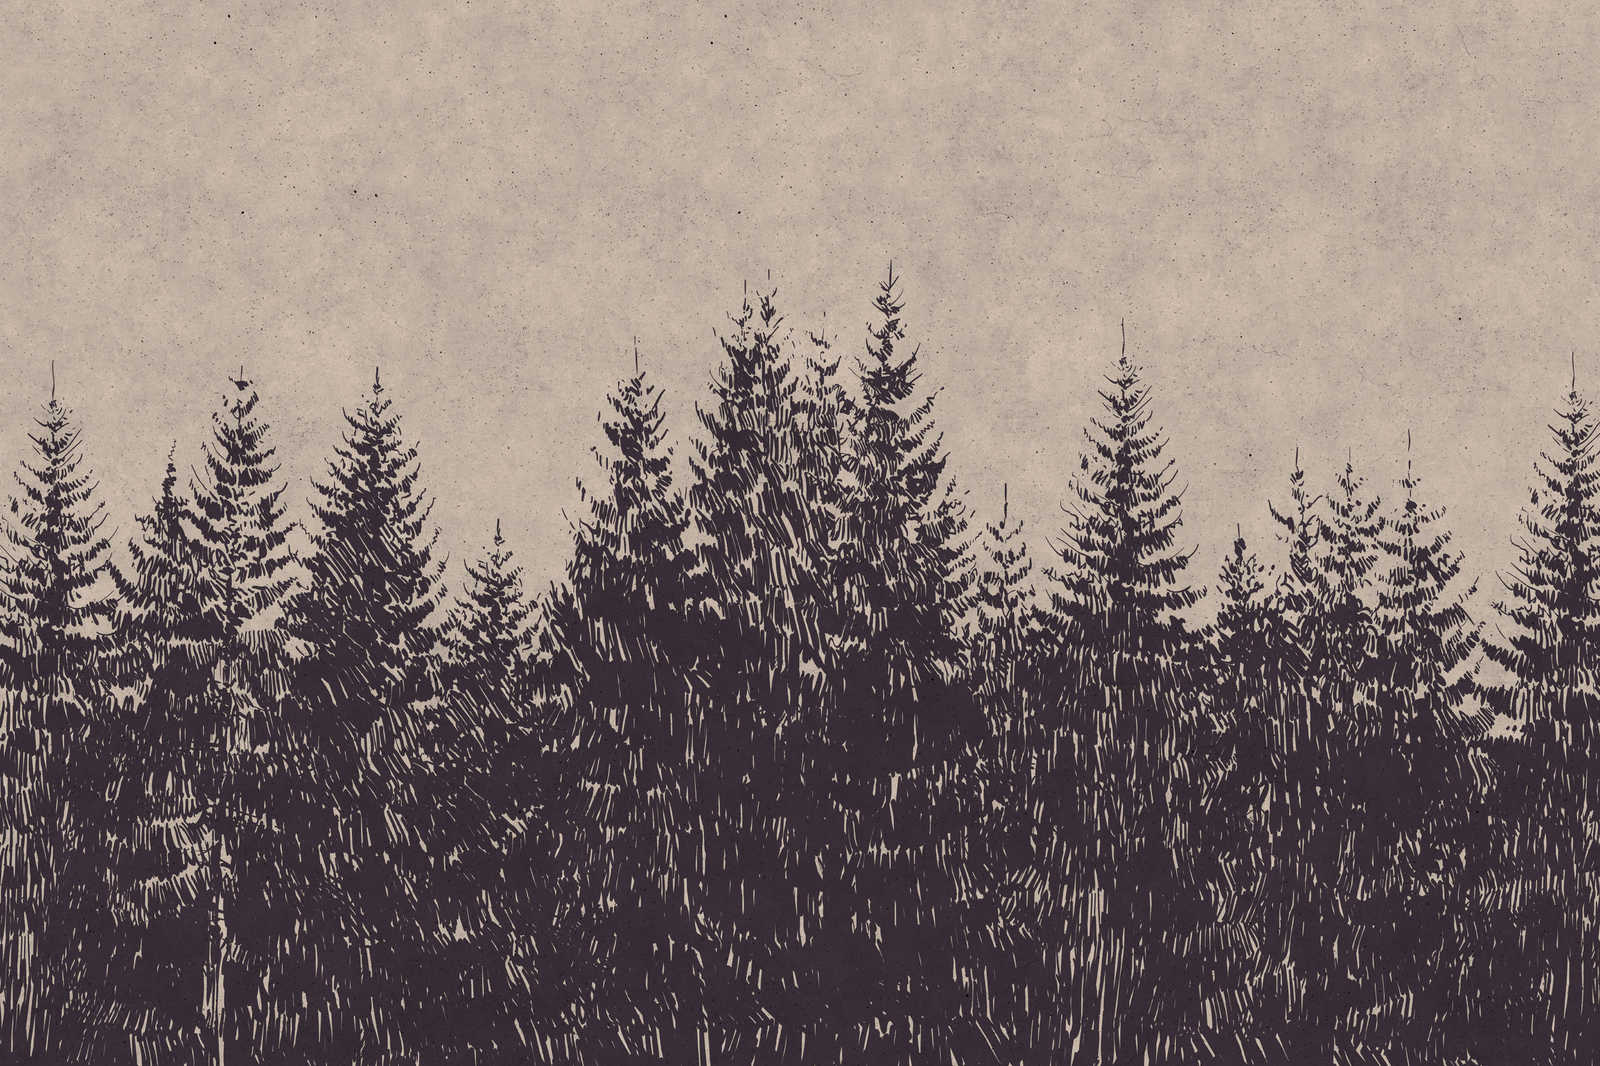             Cuadro en lienzo Abetos del bosque en estilo dibujo - 0,90 m x 0,60 m
        